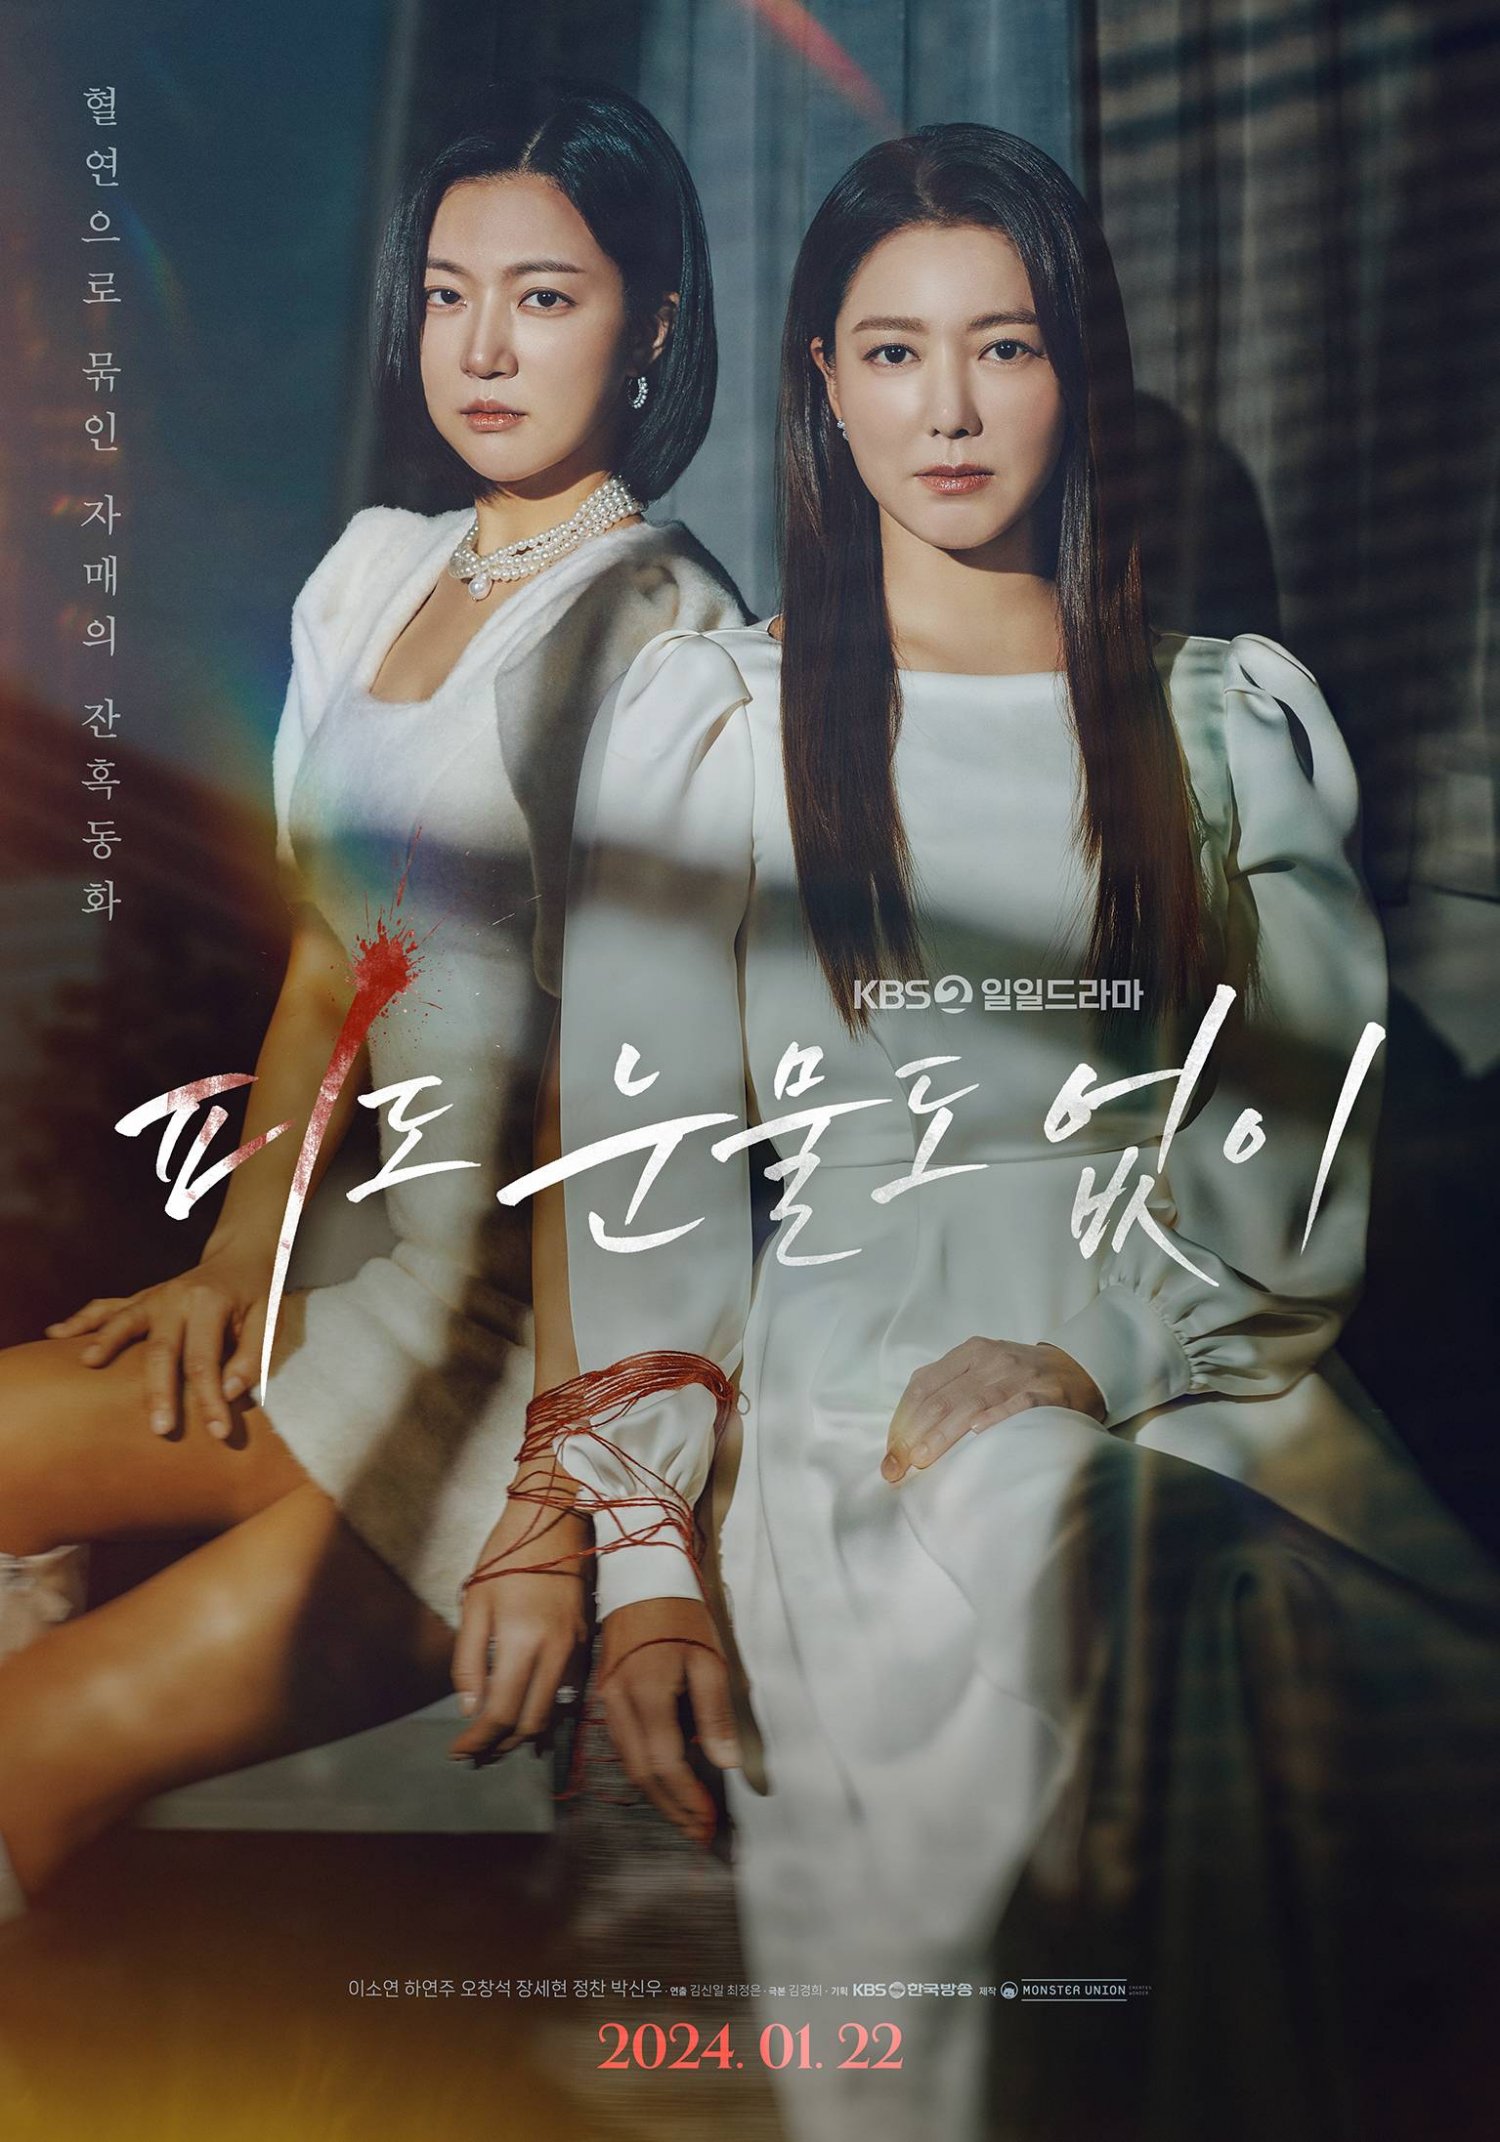 In Cold Blood là một bộ phim Hàn Quốc thuộc thể loại tâm lý, chính kịch chủ đề báo thù